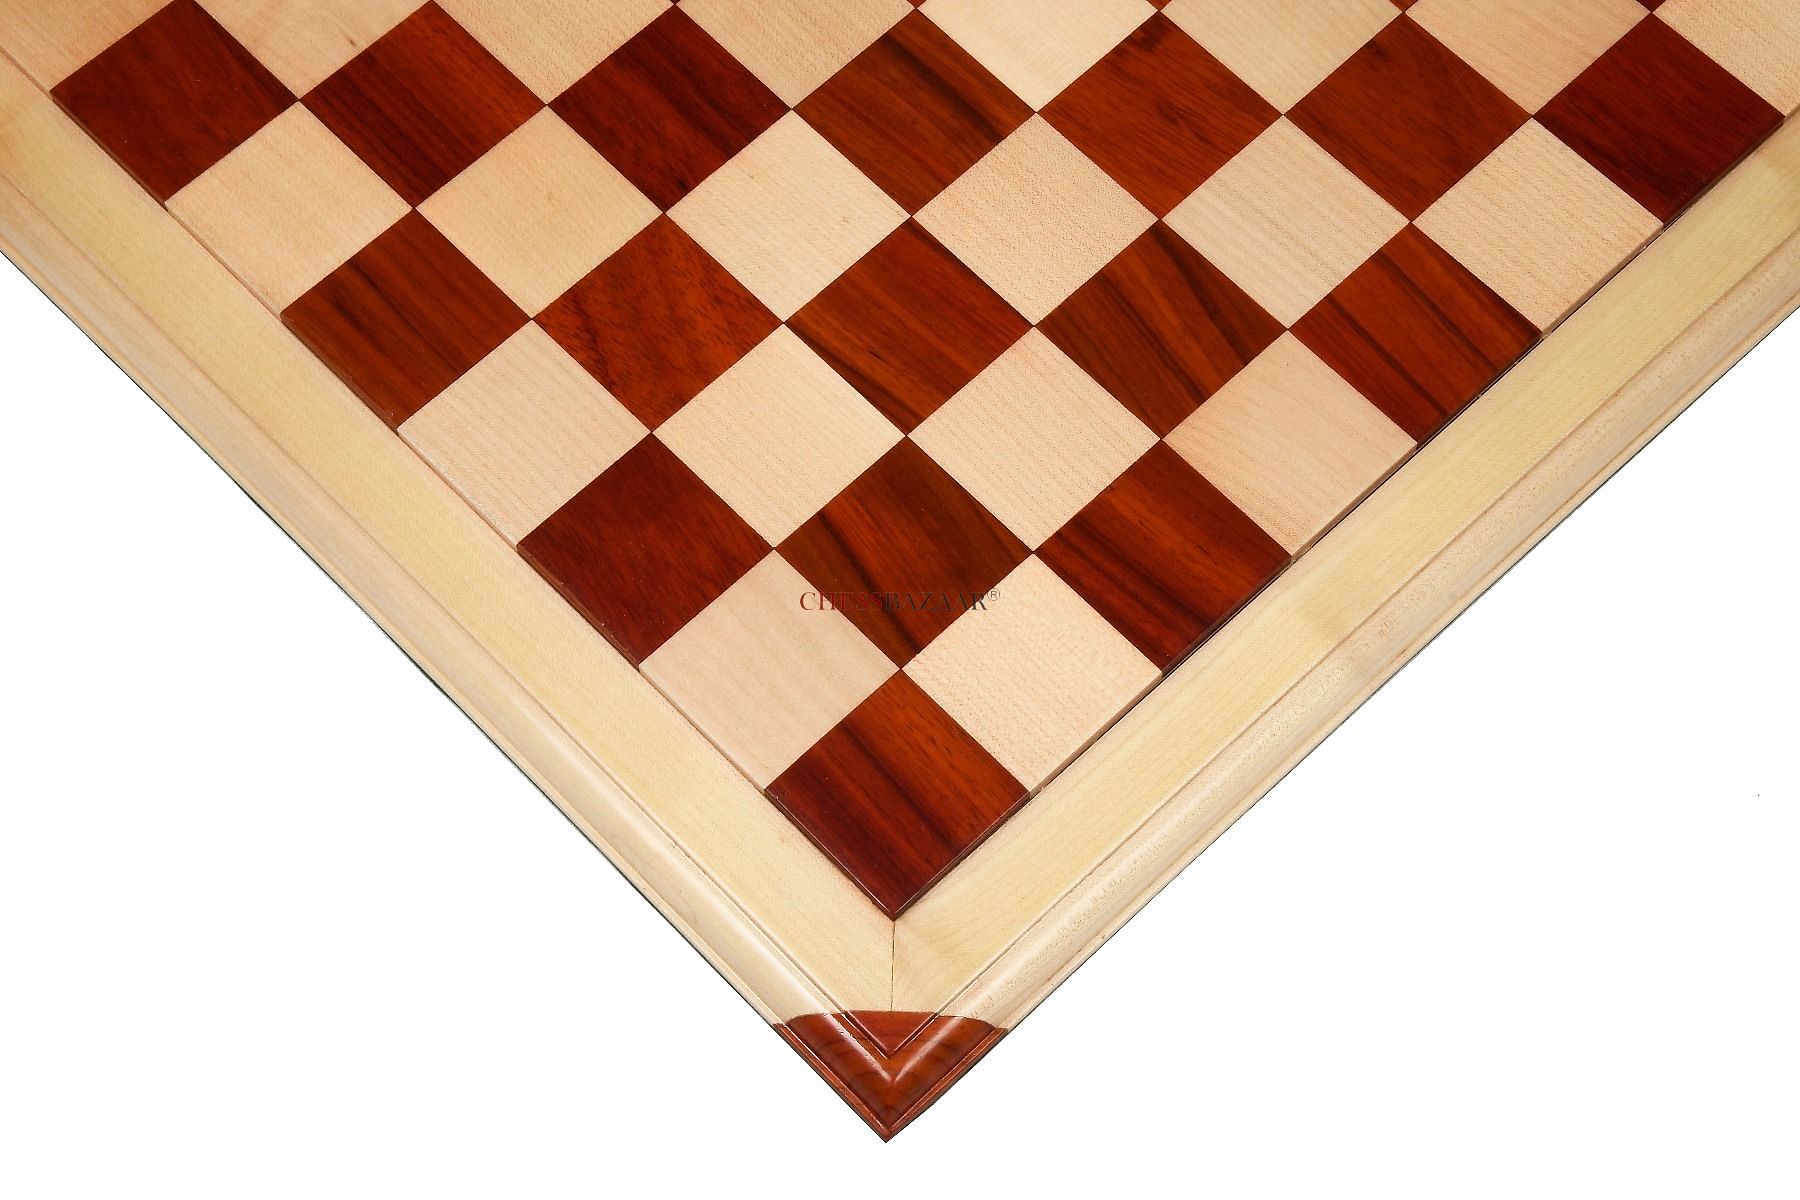 Chessboard Mahogany Standard | Tournament Size | 55 mm | Mahogany & Maple